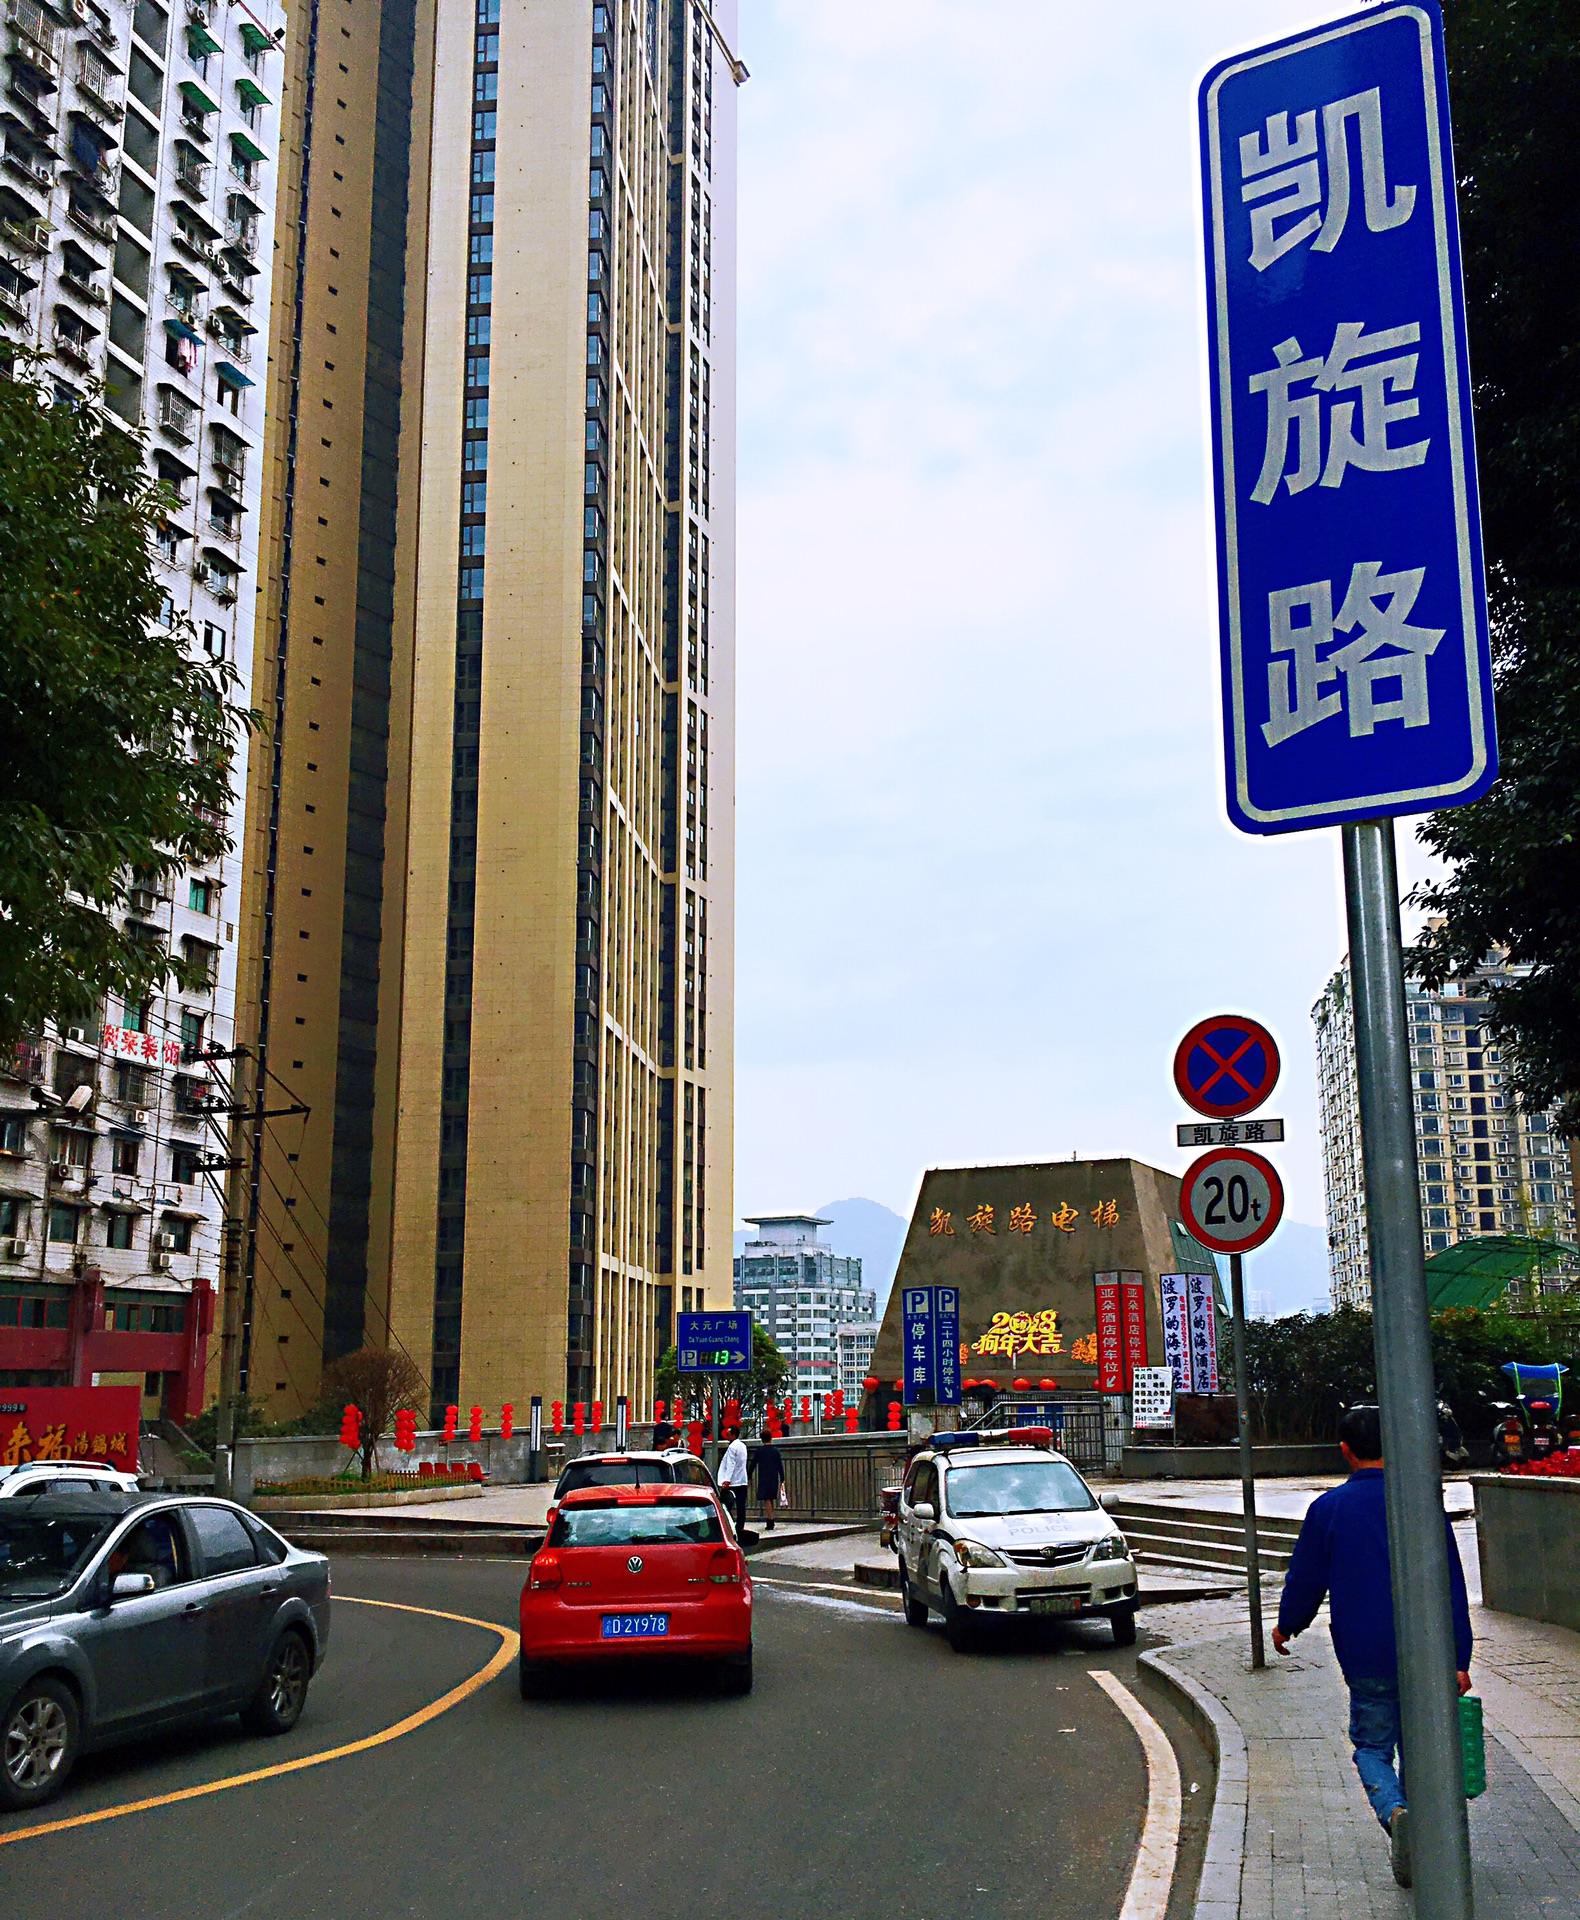 重庆魔幻3d代表之凯旋路电梯及任性天桥—霞姐印象重庆之凯旋路电梯